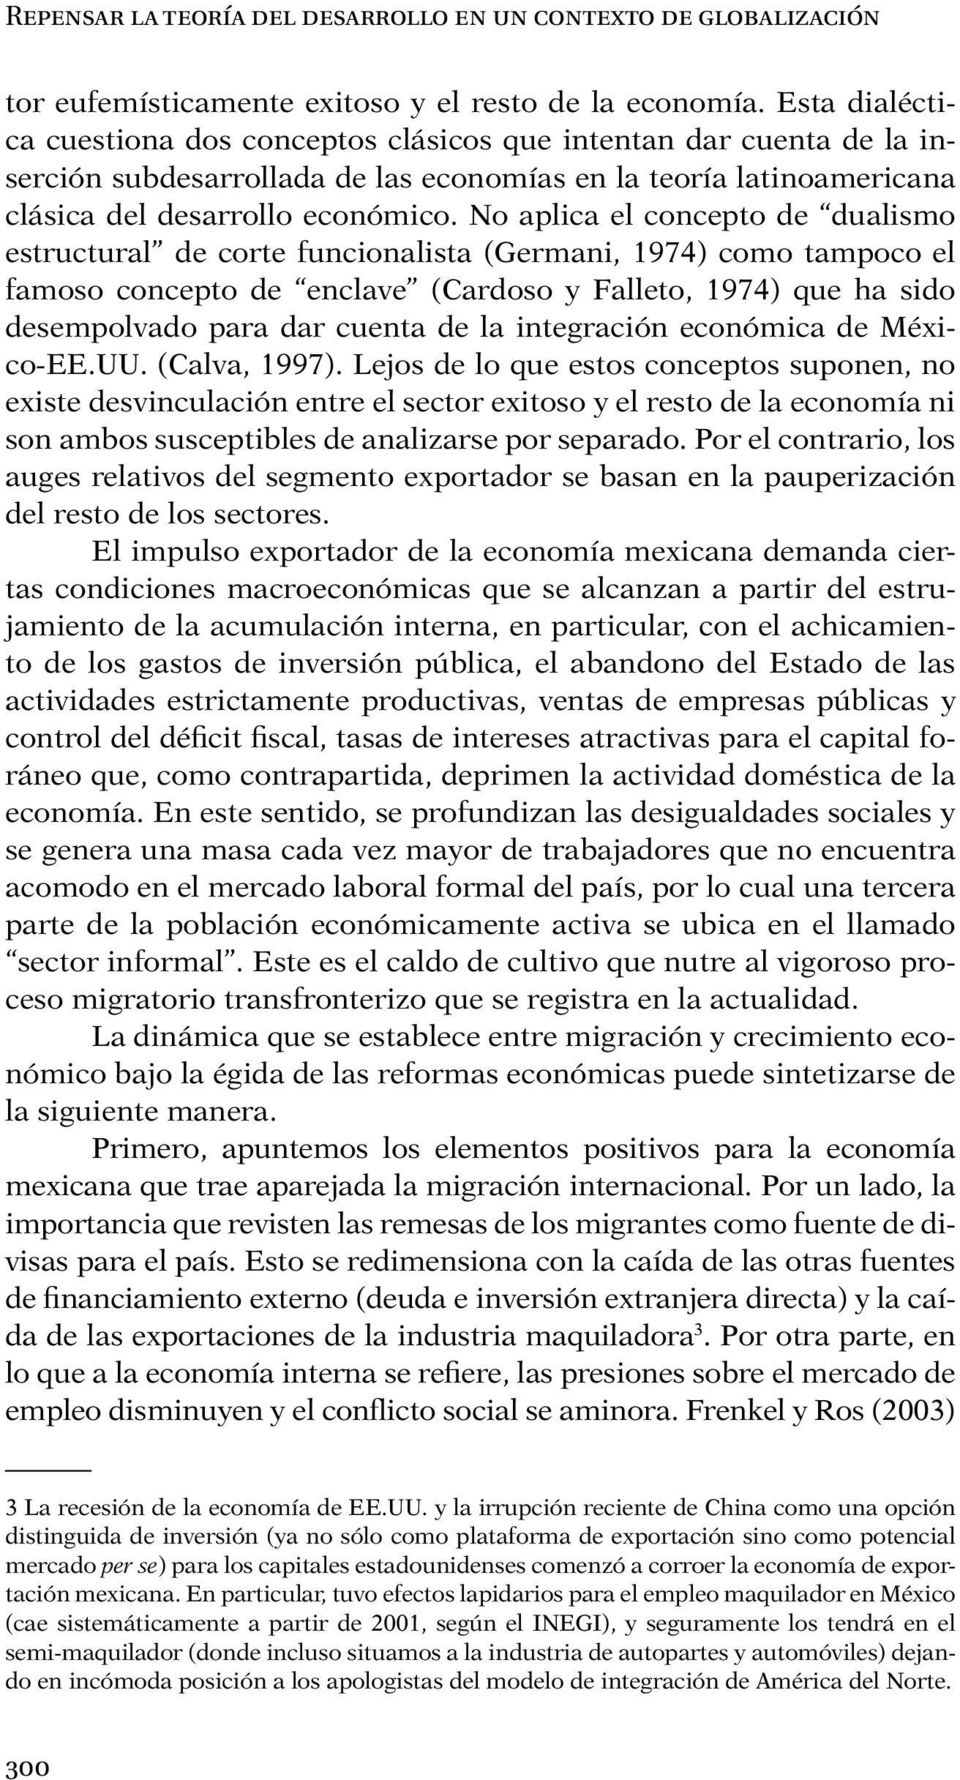 No aplica el concepto de dualismo estructural de corte funcionalista (Germani, 1974) como tampoco el famoso concepto de enclave (Cardoso y Falleto, 1974) que ha sido desempolvado para dar cuenta de